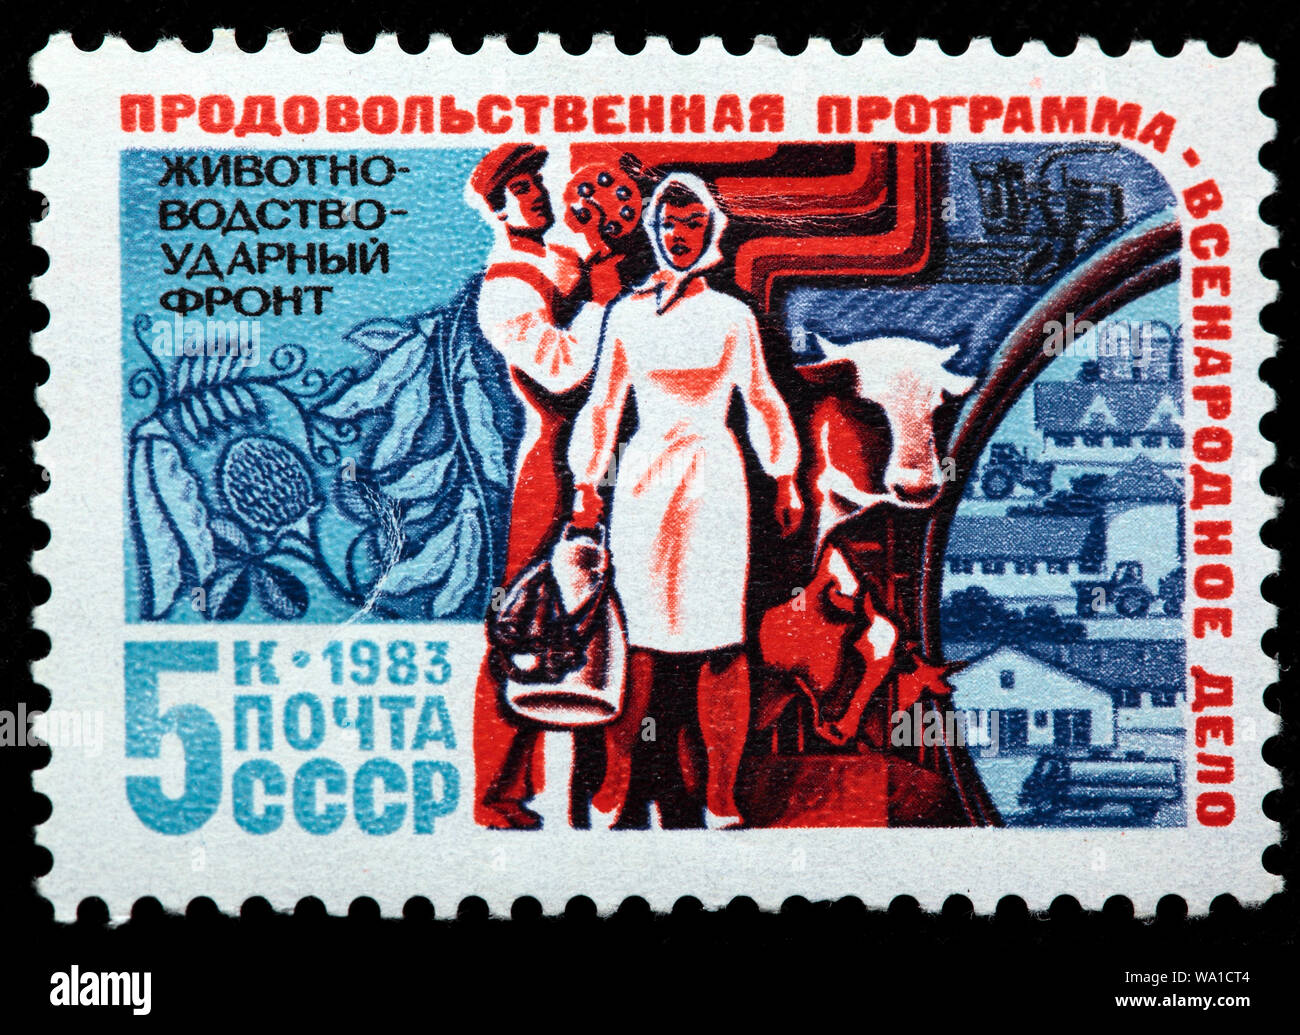 Allevamento di bovini, programma alimentare, agricoltura, francobollo, Russia, URSS, 1983 Foto Stock